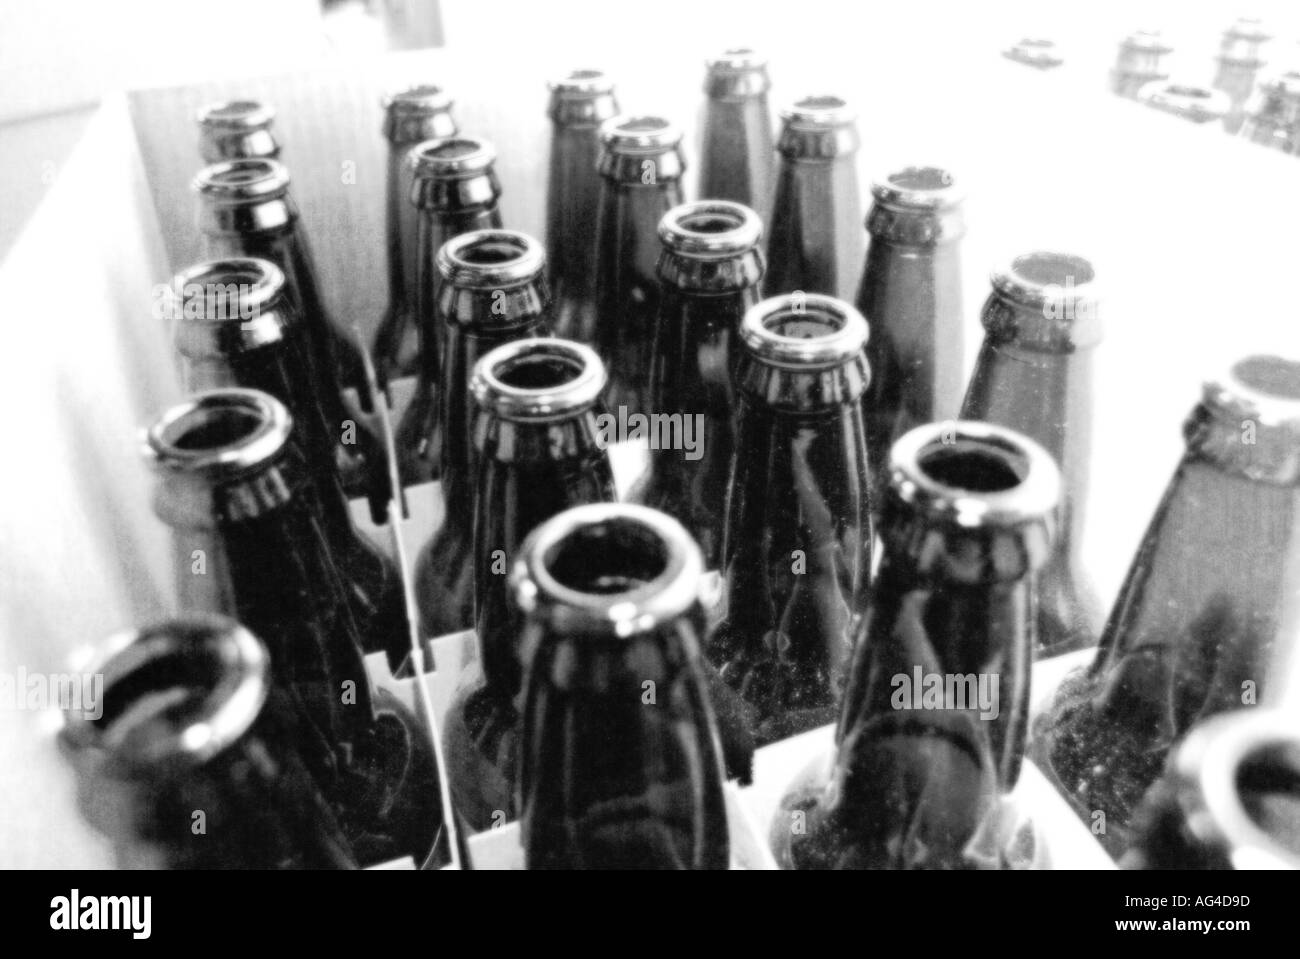 Les bouteilles de bière de l'alcool bière vin bu des boissons alcoolisées alcoolisme potable peut fermenter fermentation levure verre bouteille Banque D'Images